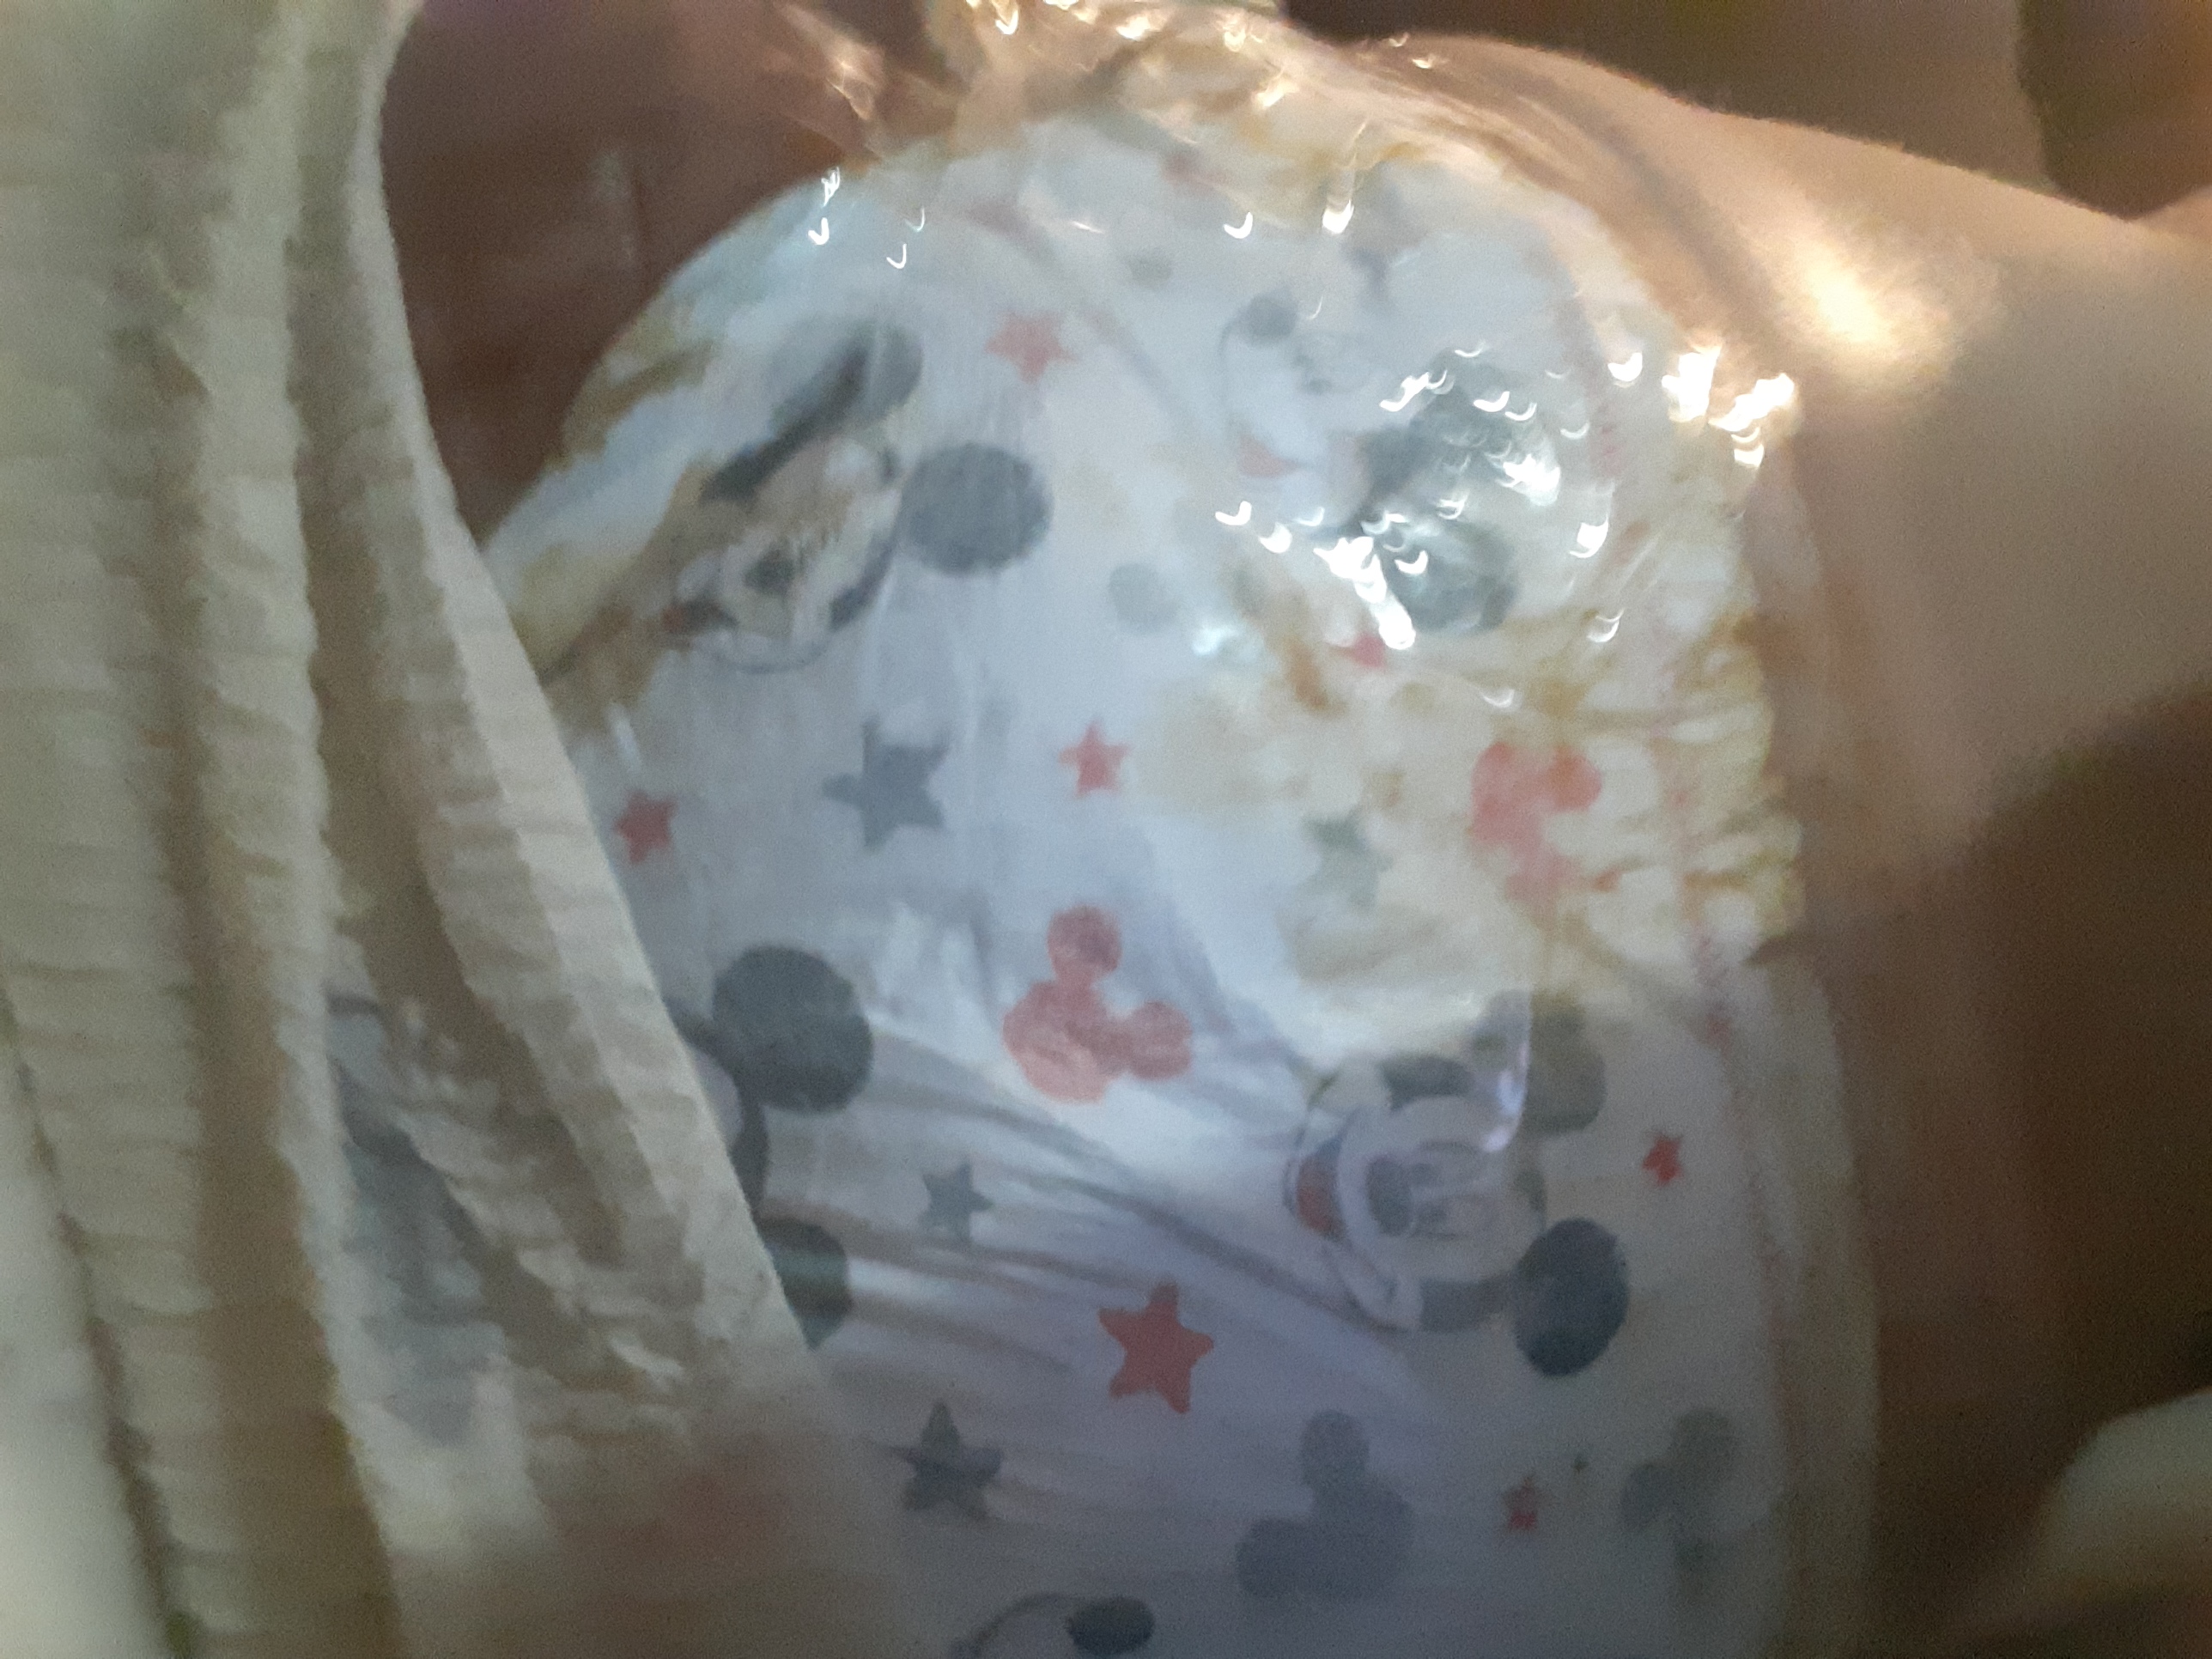 Super messy enema filled diaper